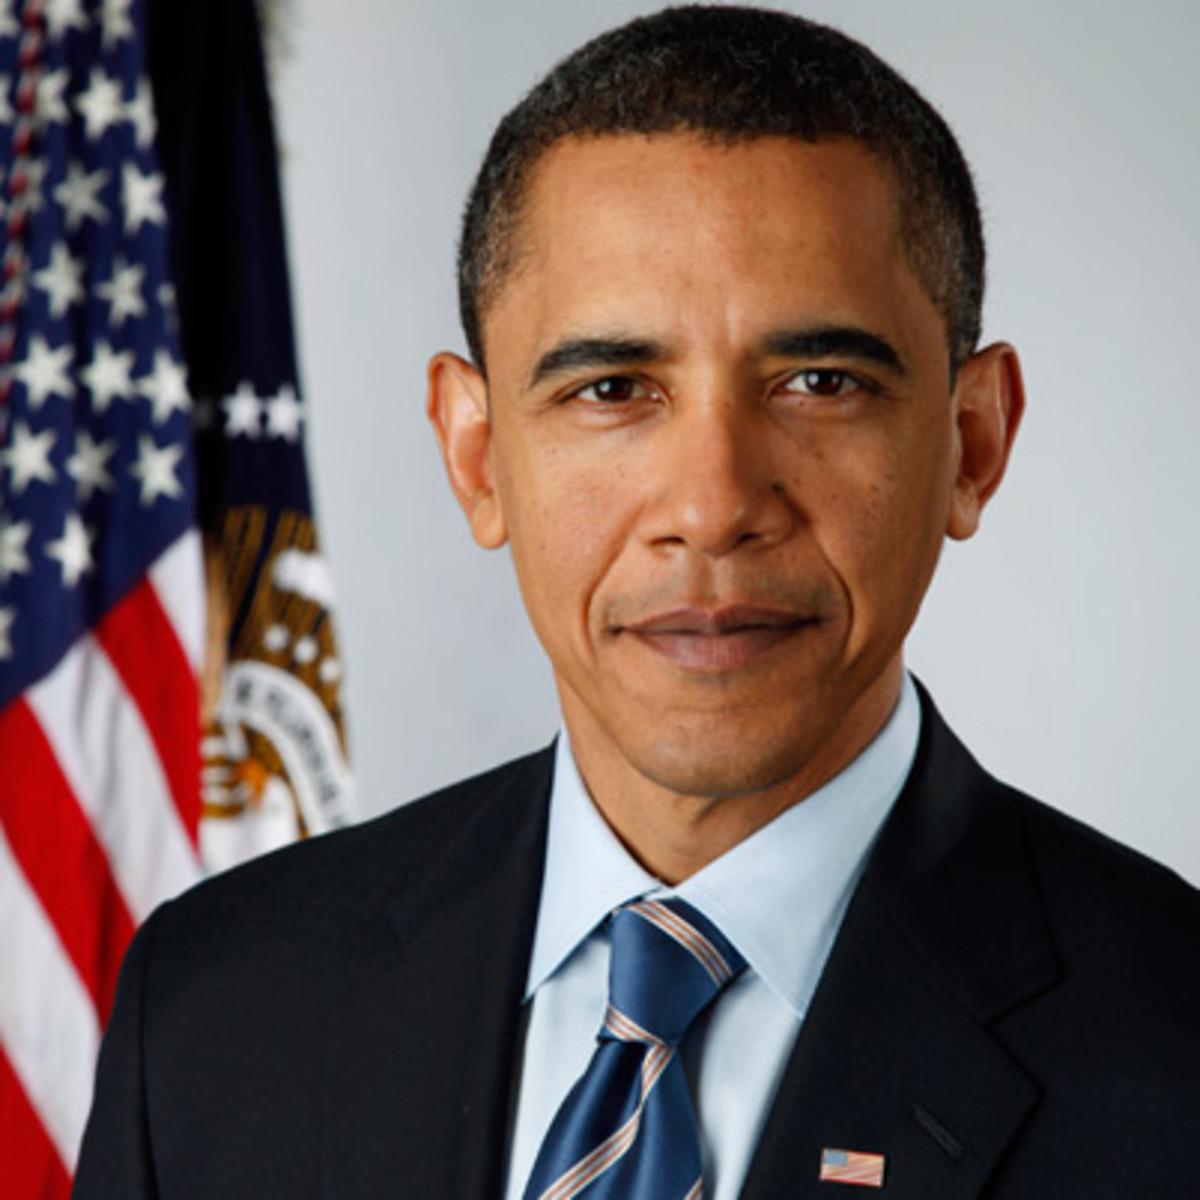 Barack Obama Image Wallpaper